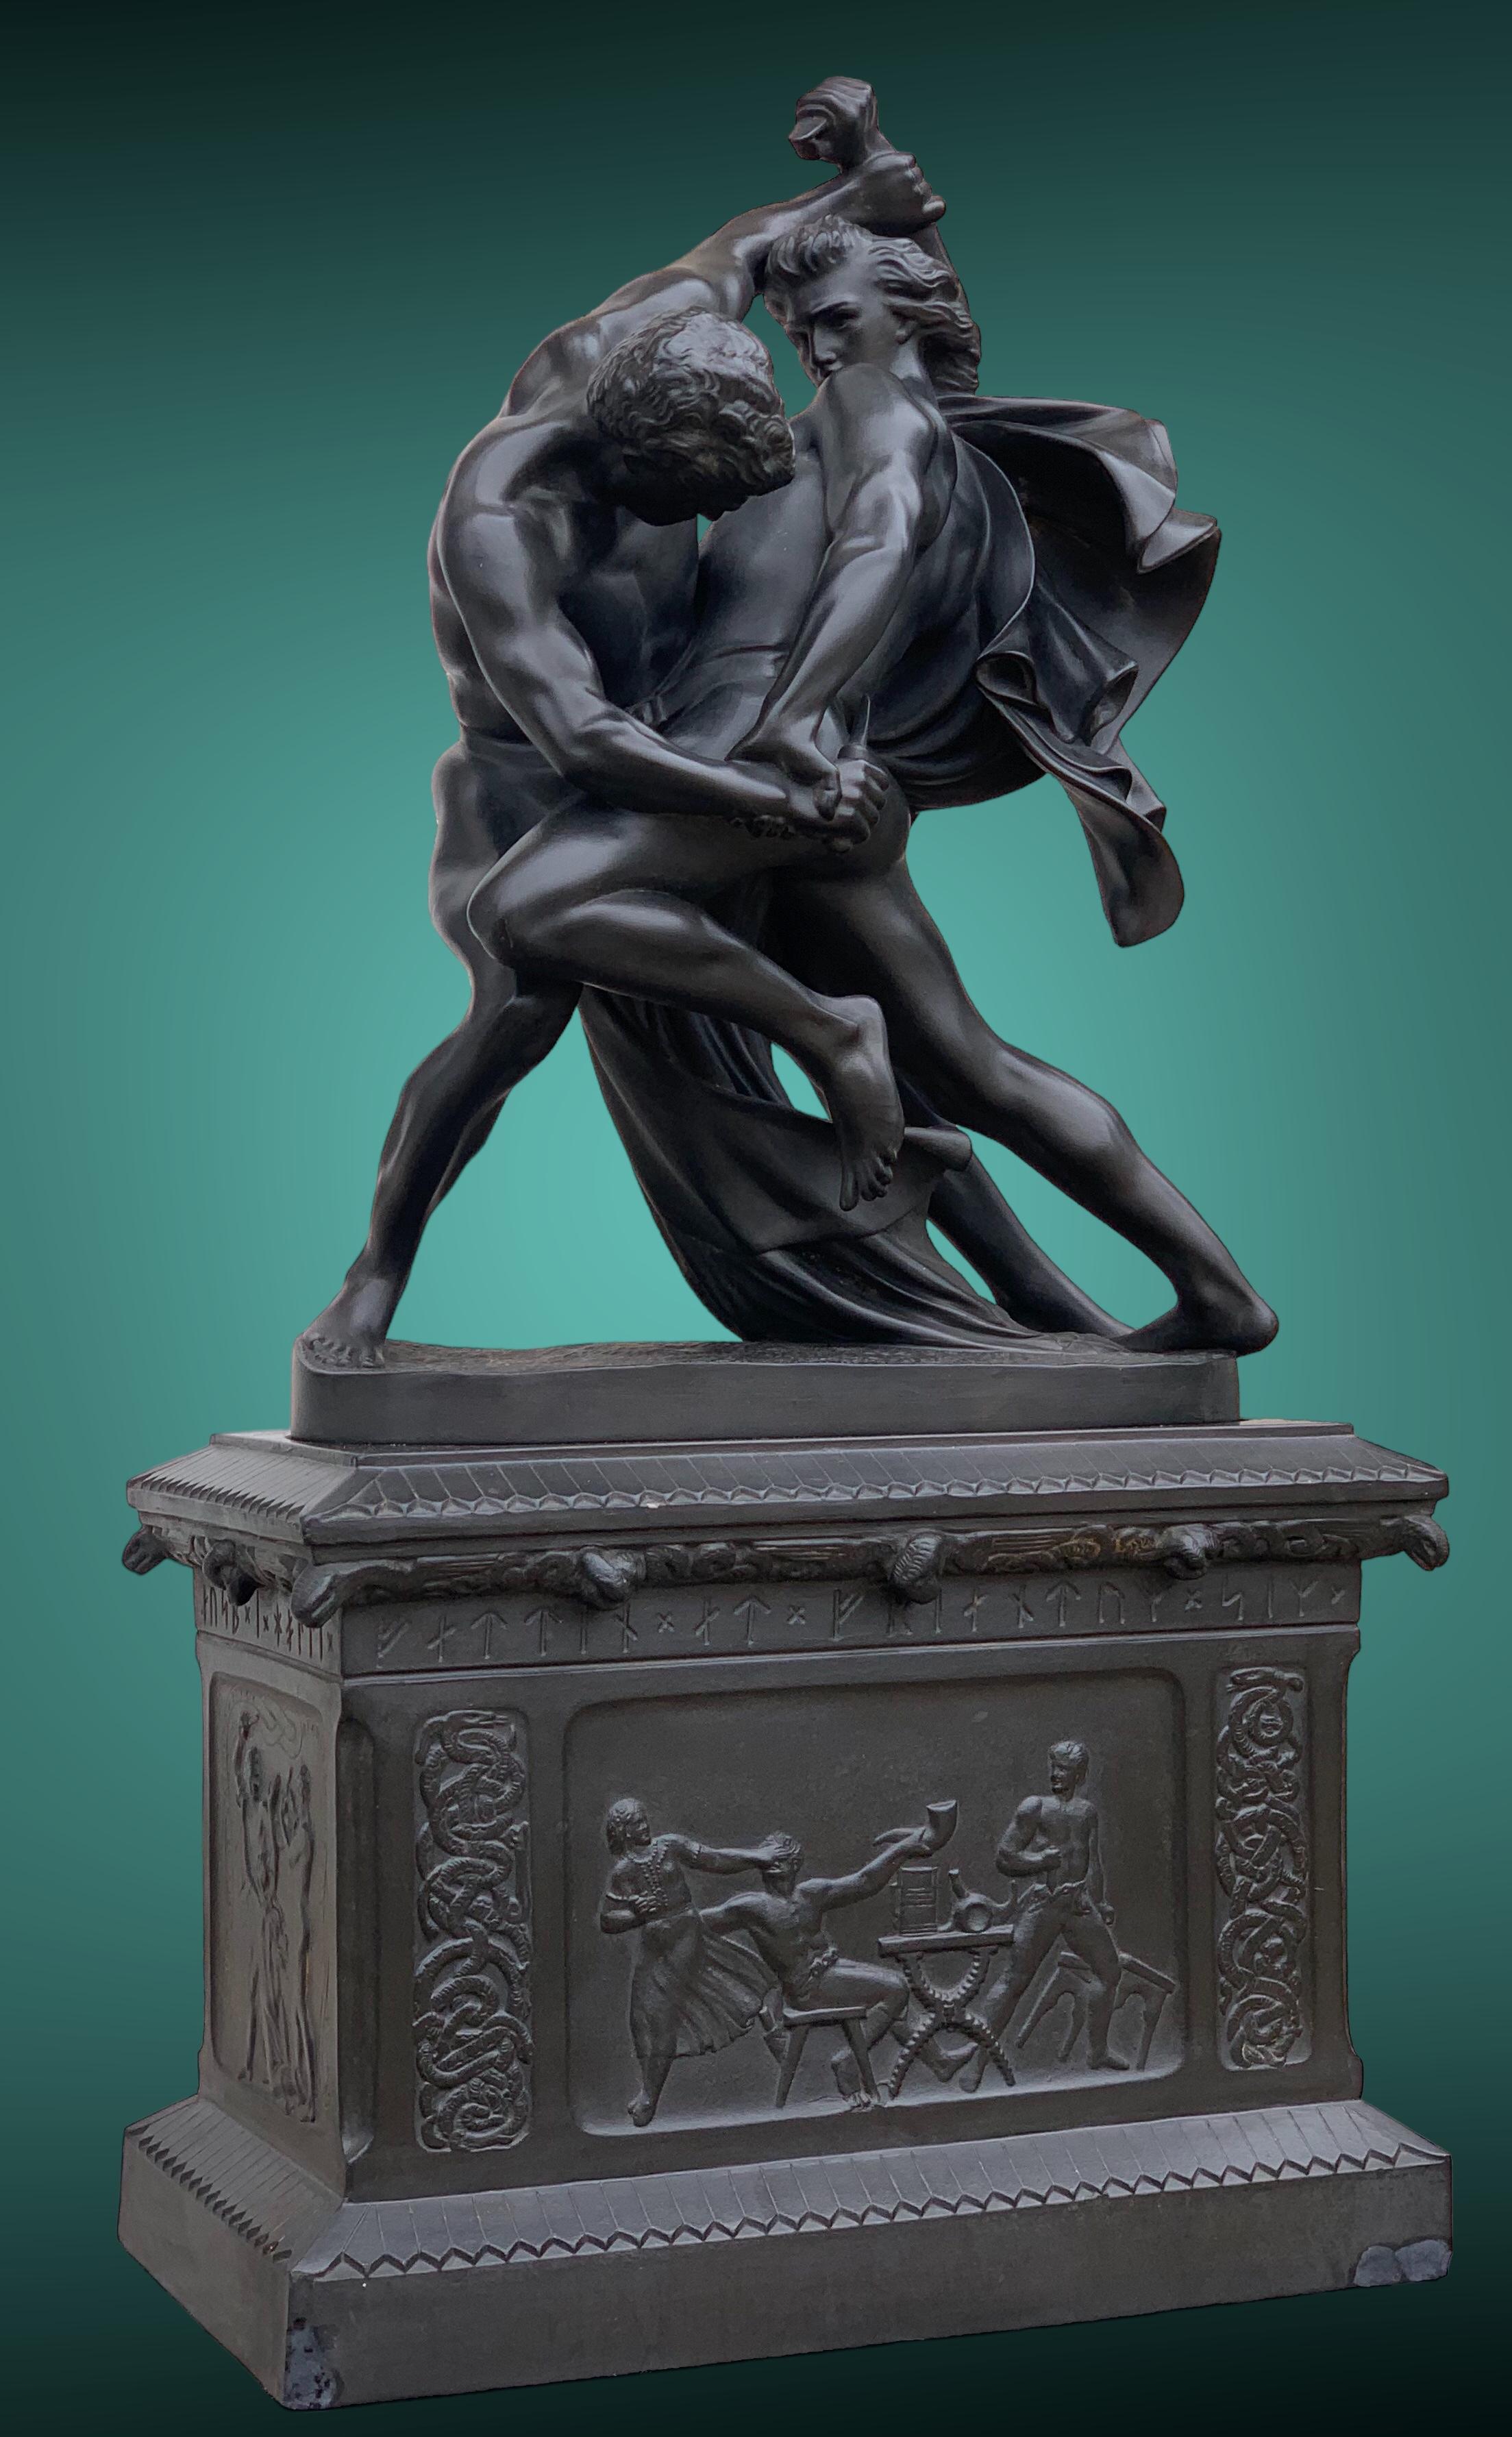 Rare et imposante réduction de la célèbre statue de JP Molin, inaugurée en 1867 devant le musée national de Stockholm.
Cette version en grès émaillé noir a été produite par la Manufacture Hjorth de l'île de Bornholm. 
Les 